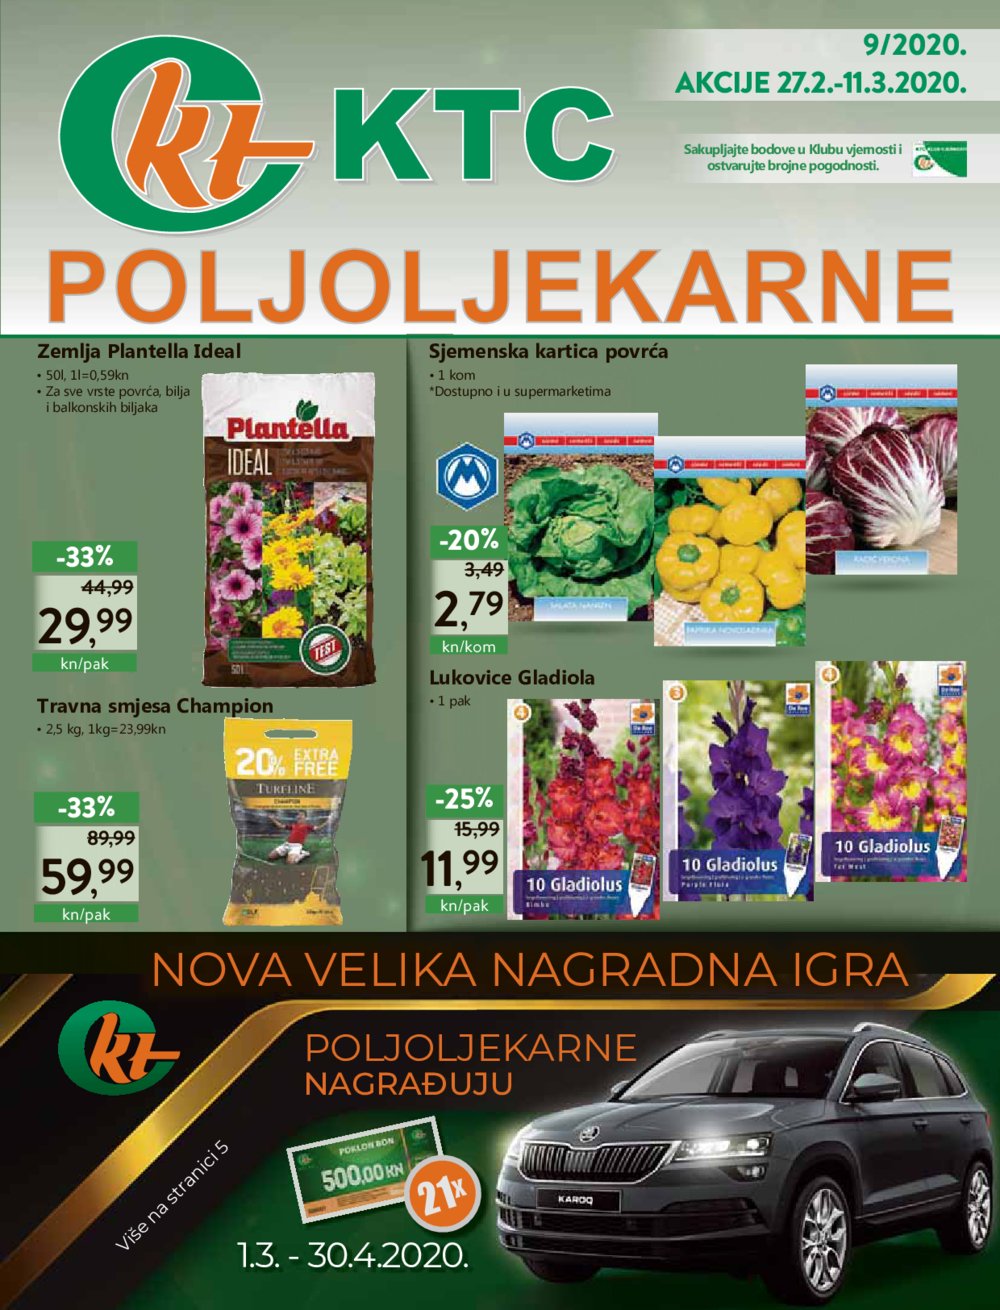 KTC katalog Poljoljekarne 27.02.-11.03.2020.